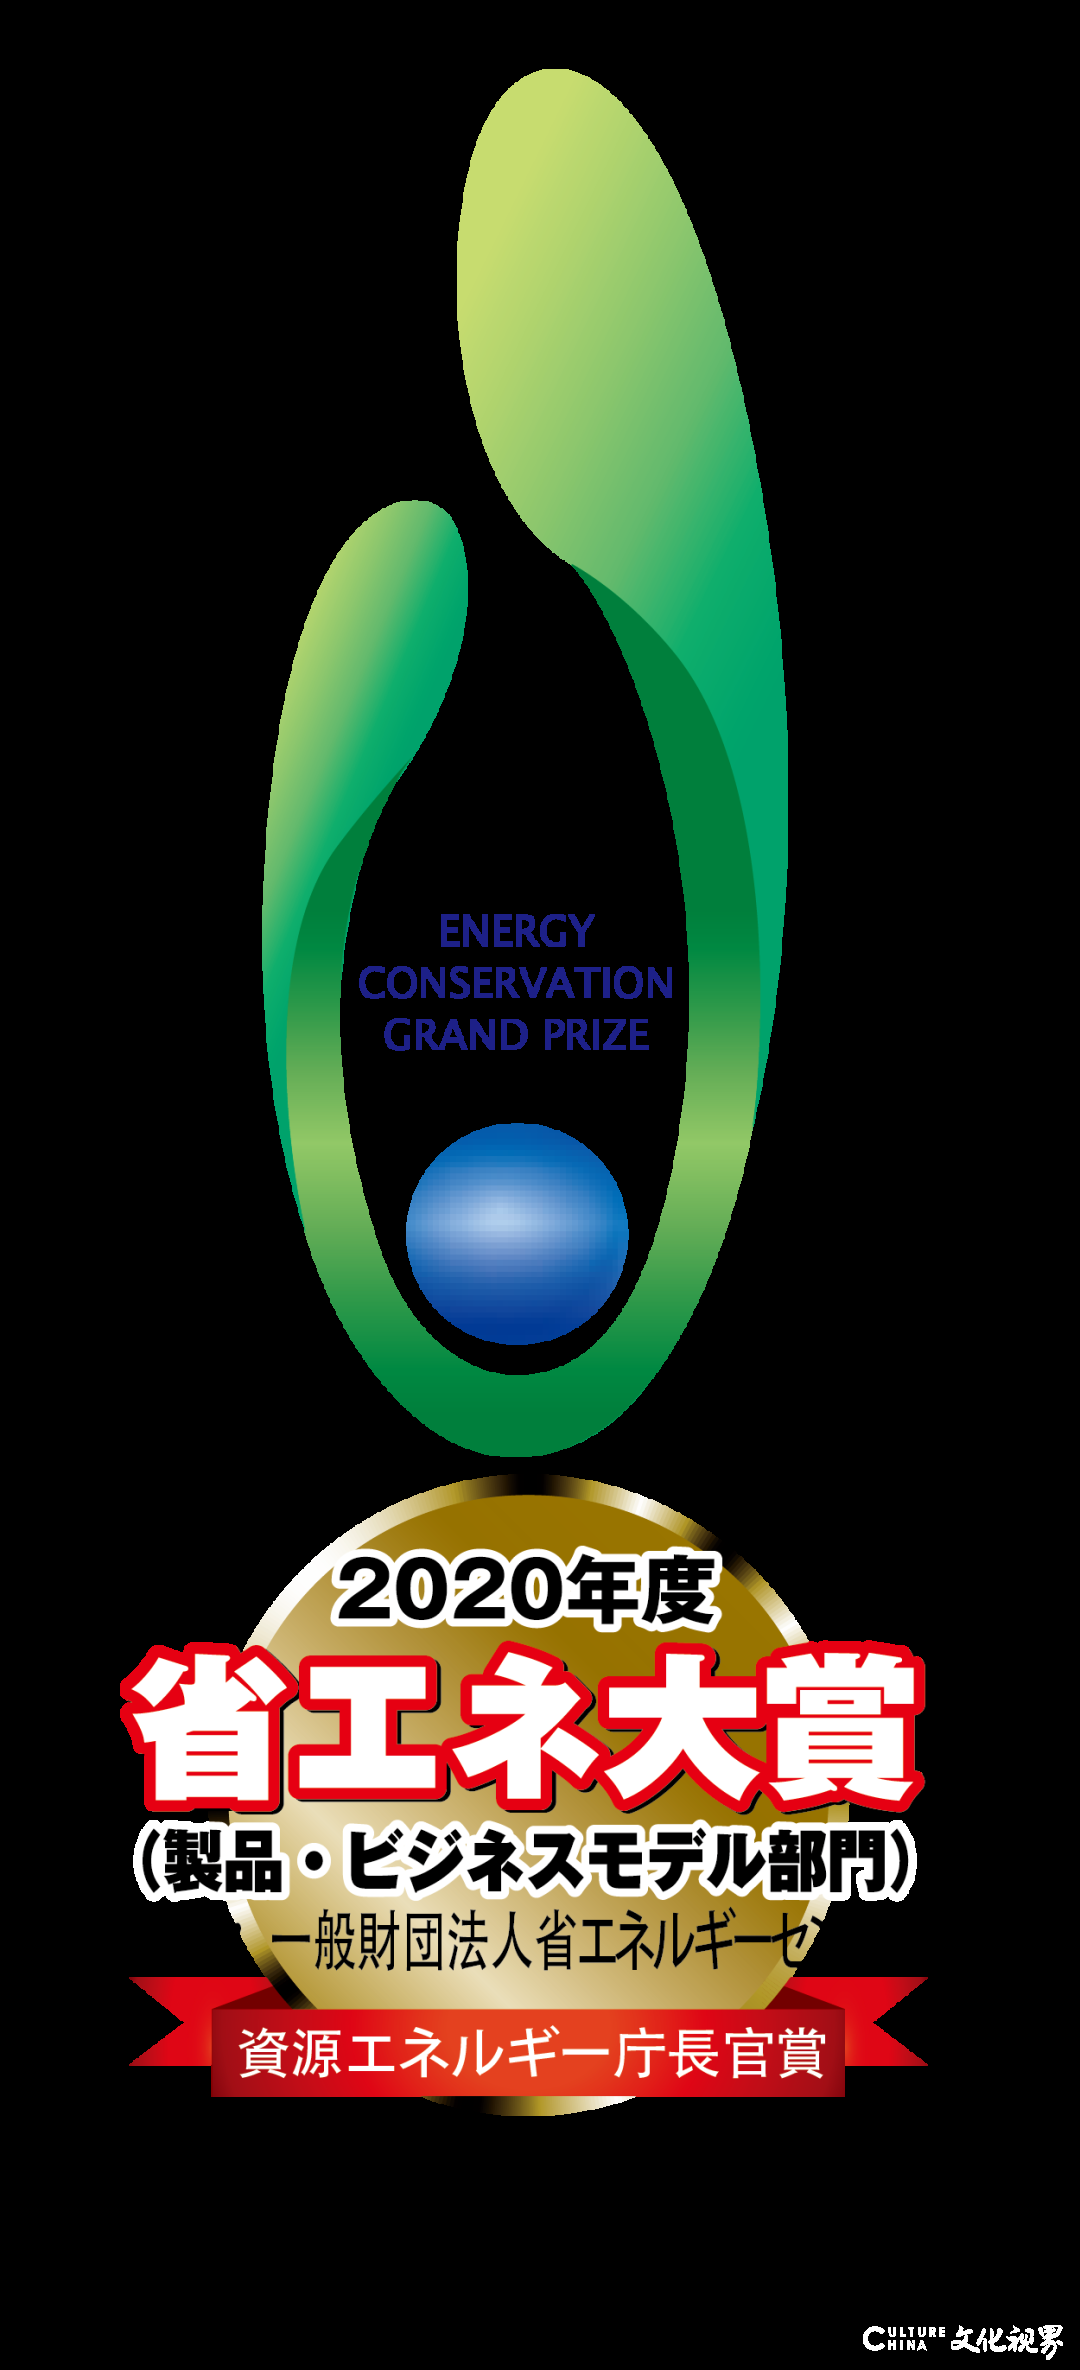 三菱重工空冷热泵水机MSV2系列斩获日本节能大奖，并正式量产落地